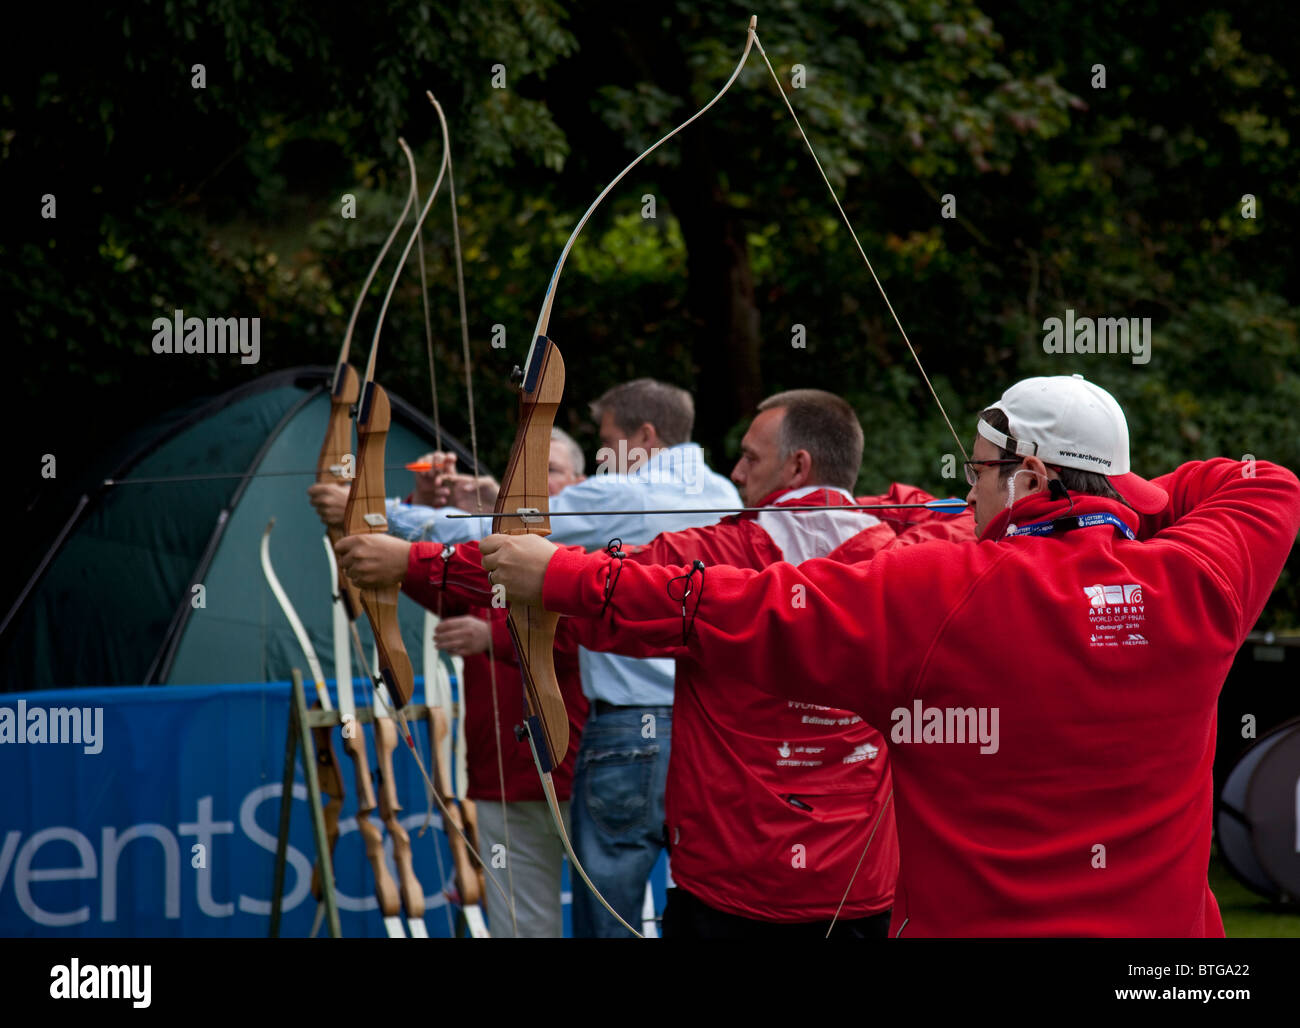 Männchen mit Pfeil und Bogen schießen am Ziel, Edinburgh, Schottland, Vereinigtes Königreich, Europa Stockfoto